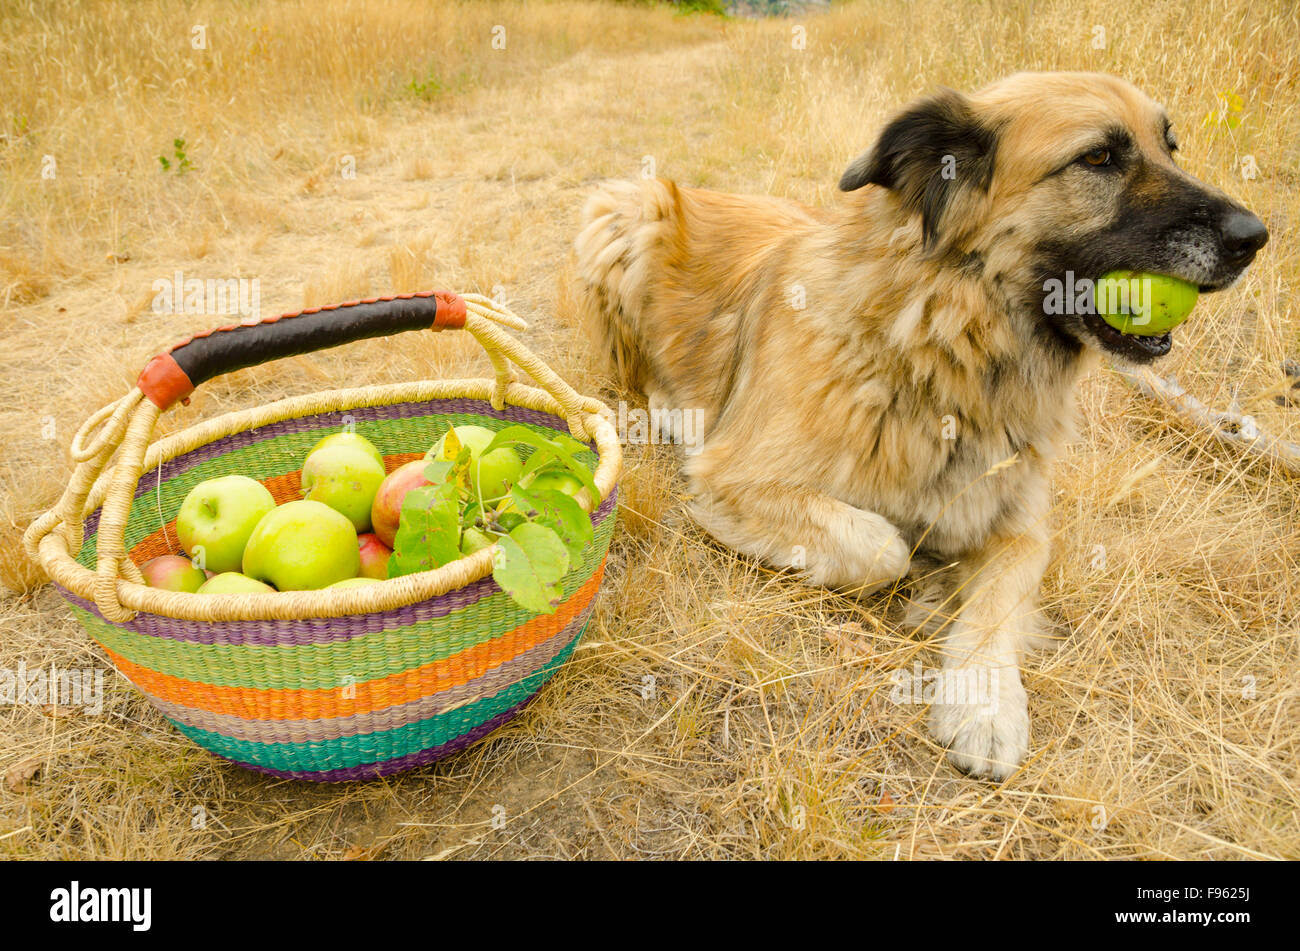 El perro de la familia pasa por una manzana en lugar de su habitual pelota de tenis Foto de stock